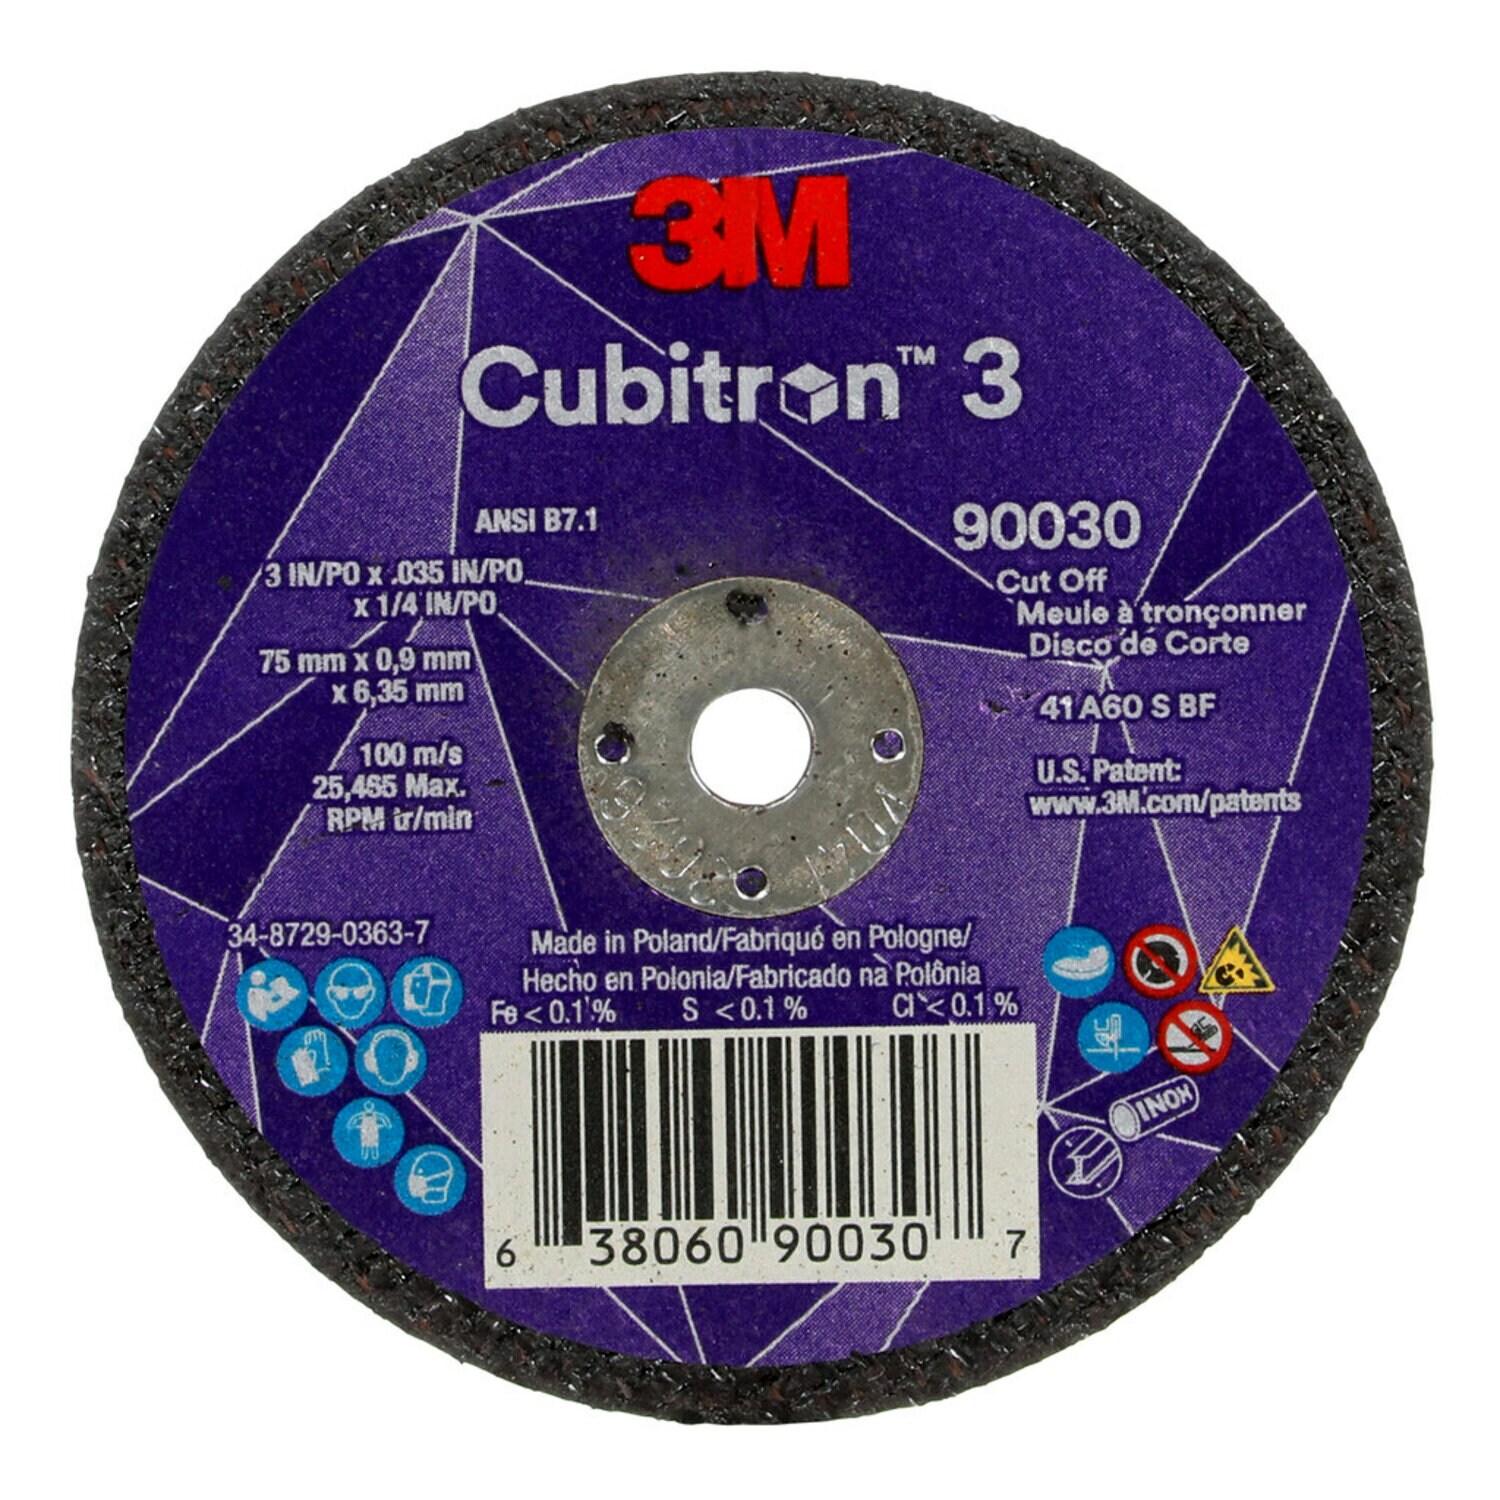 7100303860 - 3M Cubitron 3 Cut-Off Wheel, 90030, 60+, T1, 3 in x 0.035 in x 1/4 in
(75 x 0.9 x 6.35 mm), ANSI, 25/Pack, 50 ea/Case